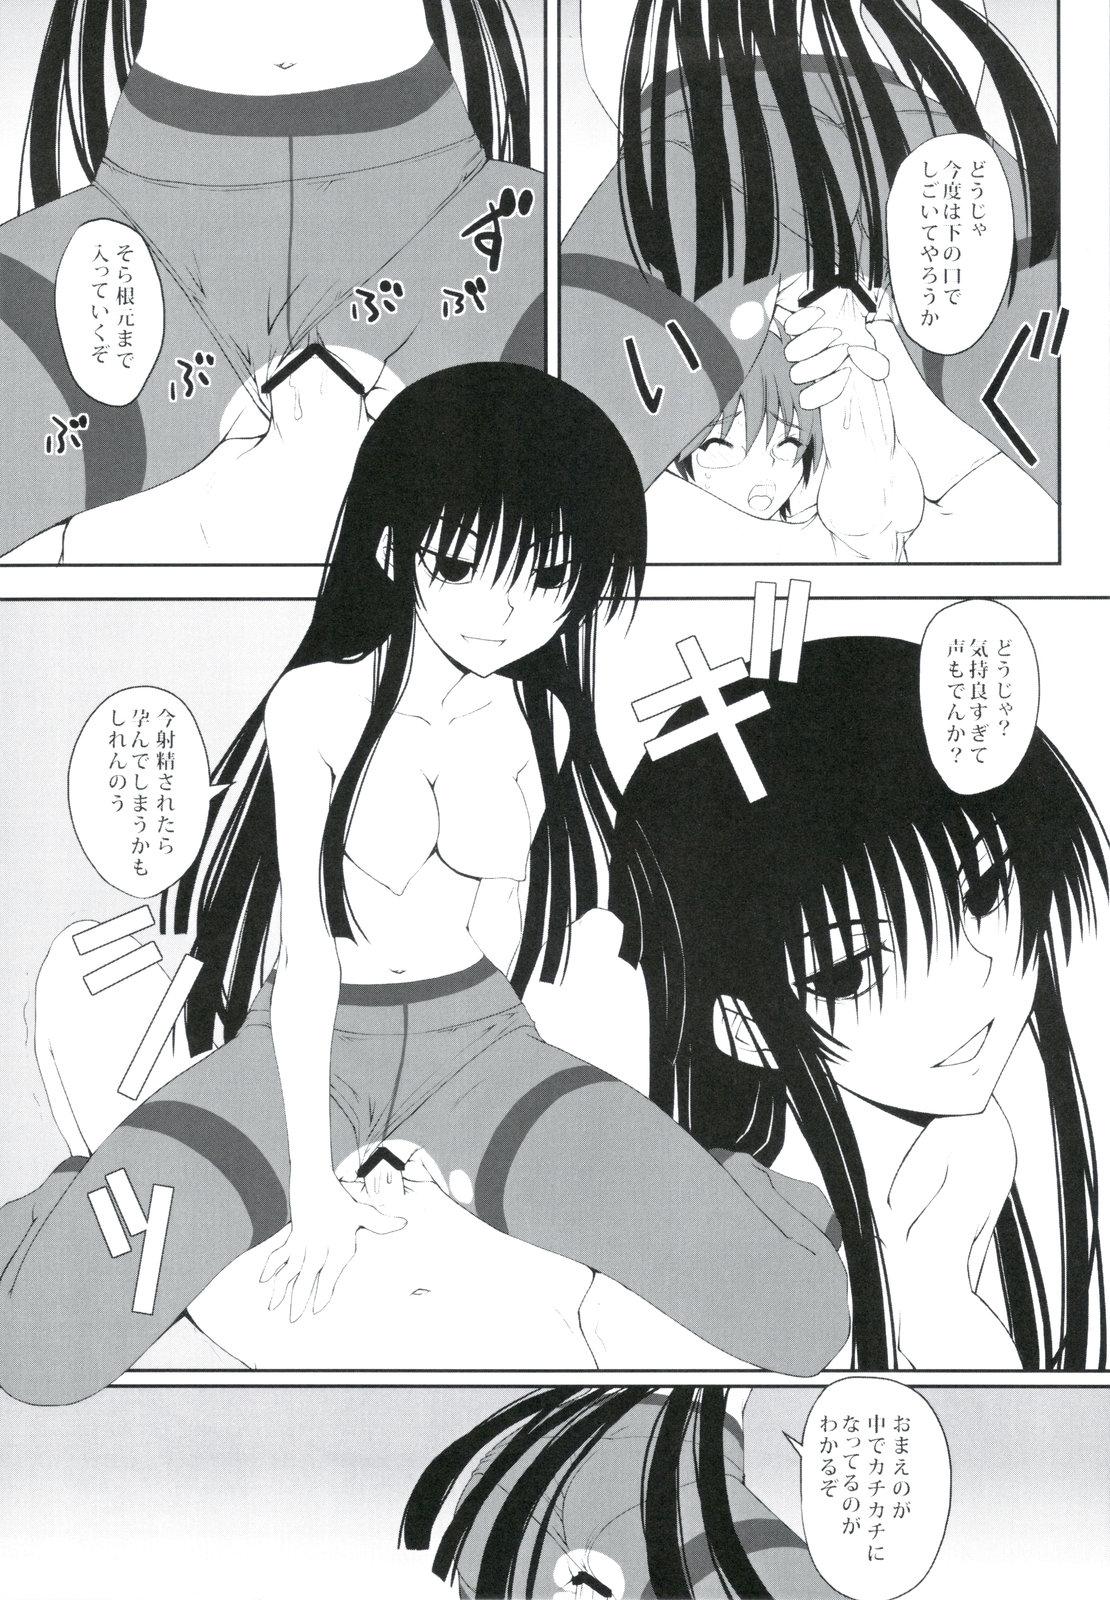 Nalgas Yoru no Rikuo-sama wa Sugoindesu Ni - Nurarihyon no mago Squirt - Page 9